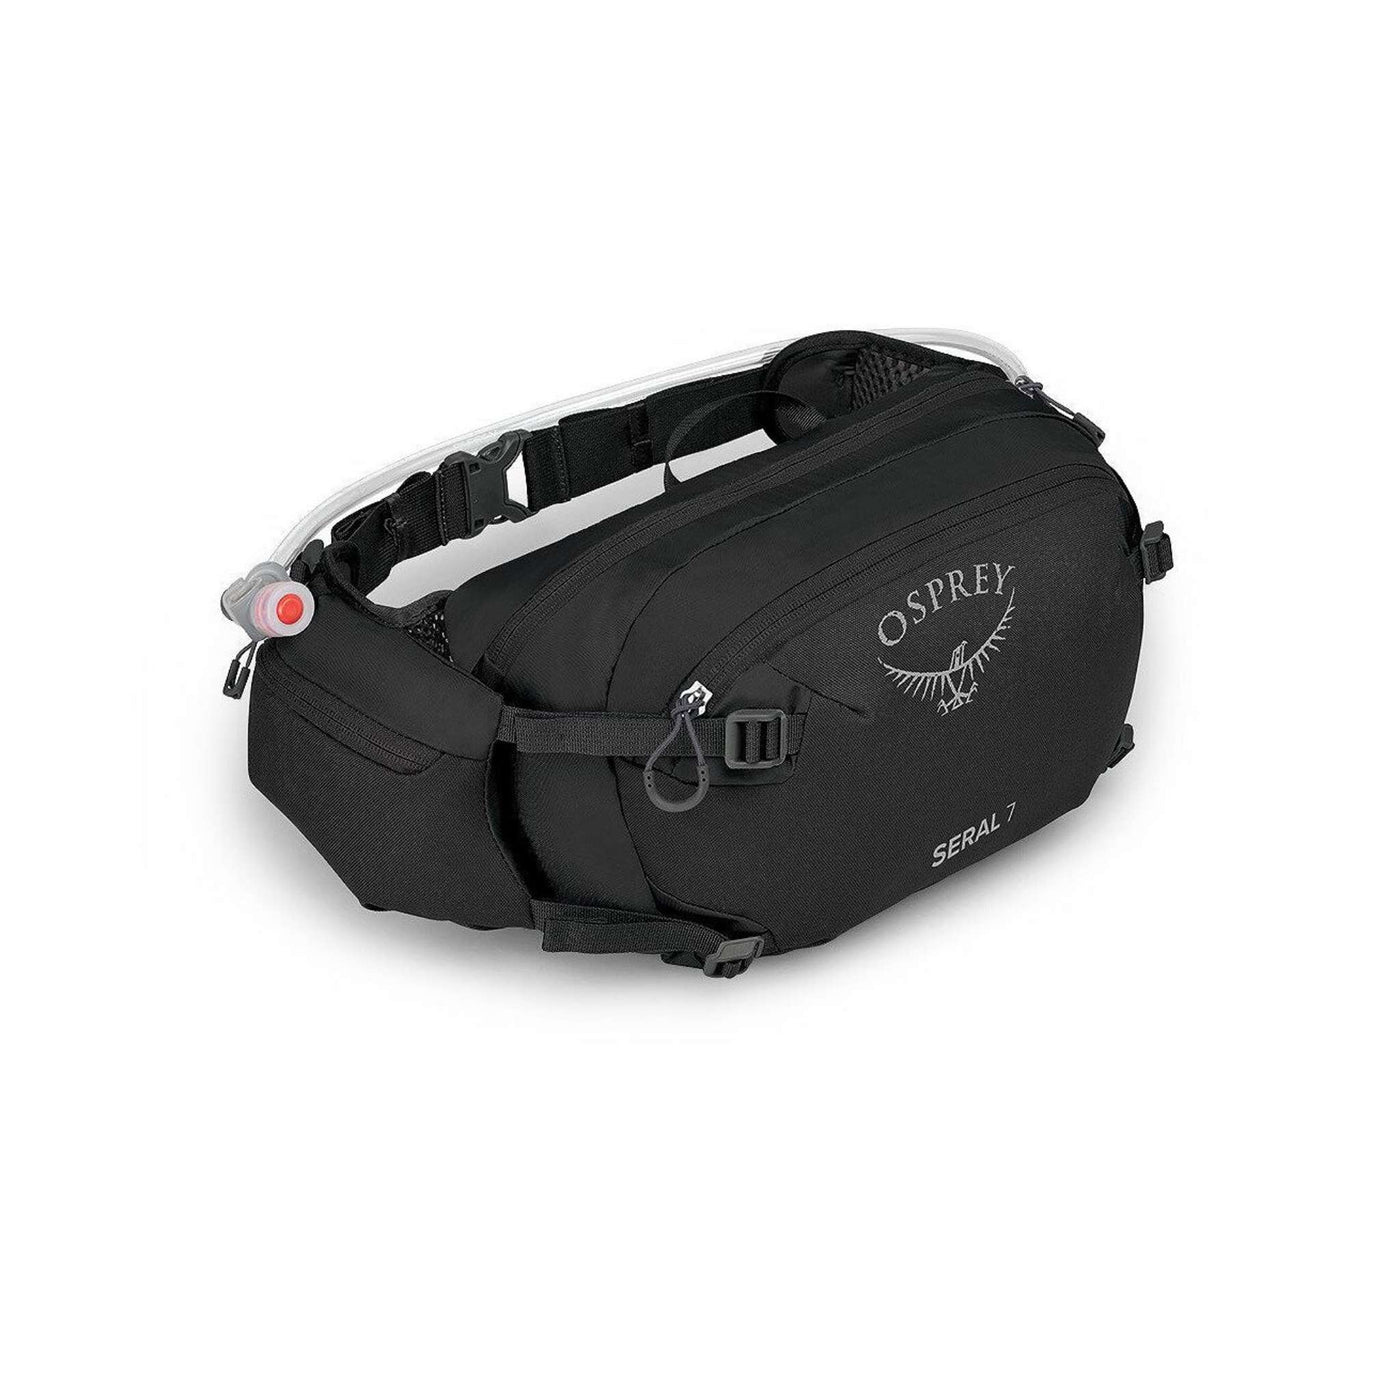 Osprey Seral 7 Lumbar Pack with Reservoir | Biking Waist Pack | Further Faster Christchurch NZ | #black